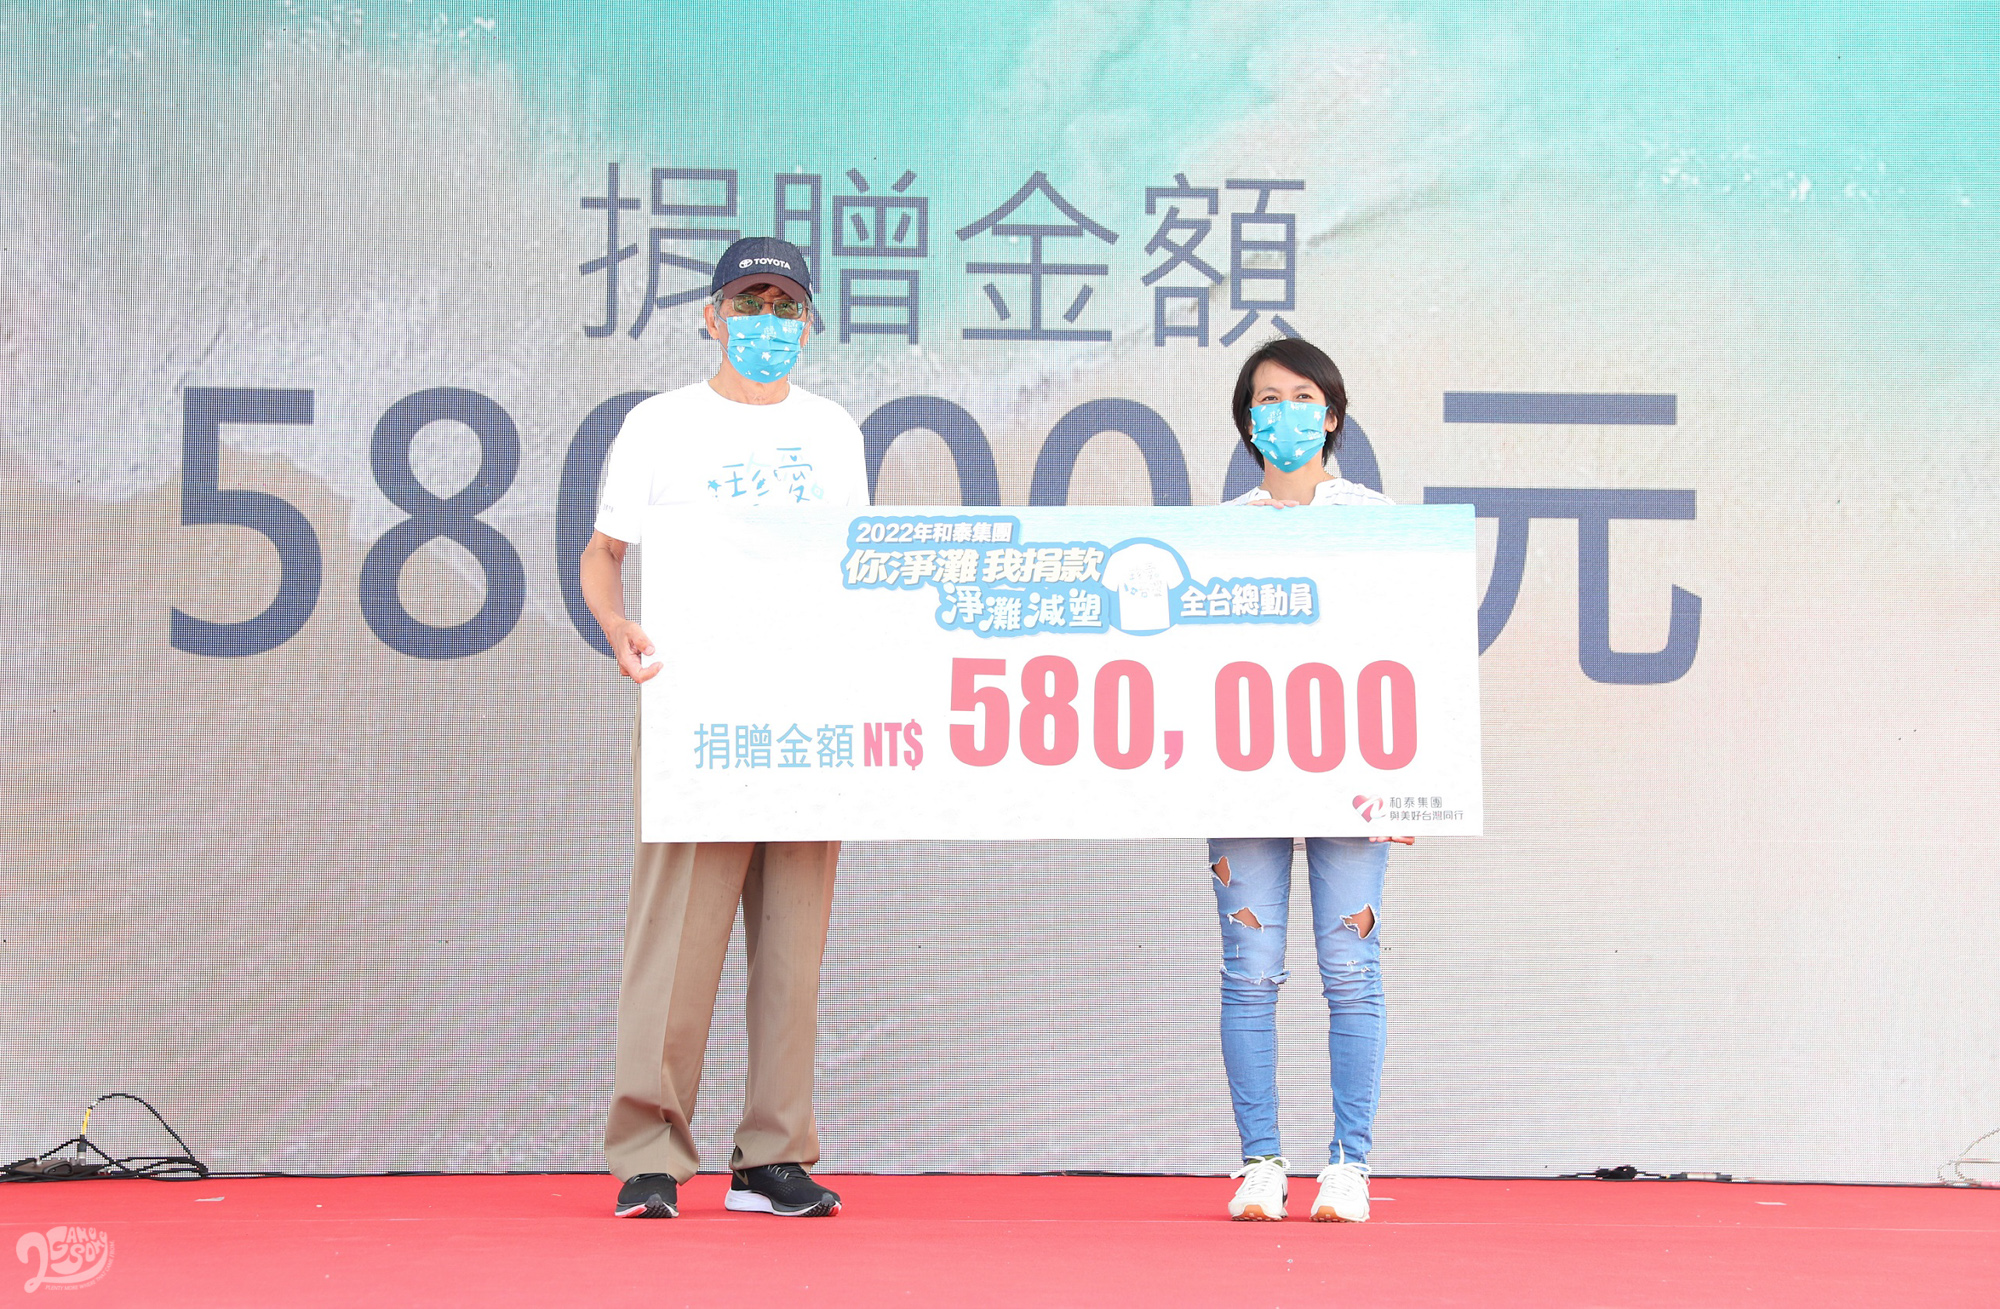 和泰集團捐贈58萬元環保教育經費予「台灣咾咕嶼協會」，和泰汽車黃南光董事長(左)代表捐贈予台灣咾咕嶼協會張欣怡秘書長(右)。